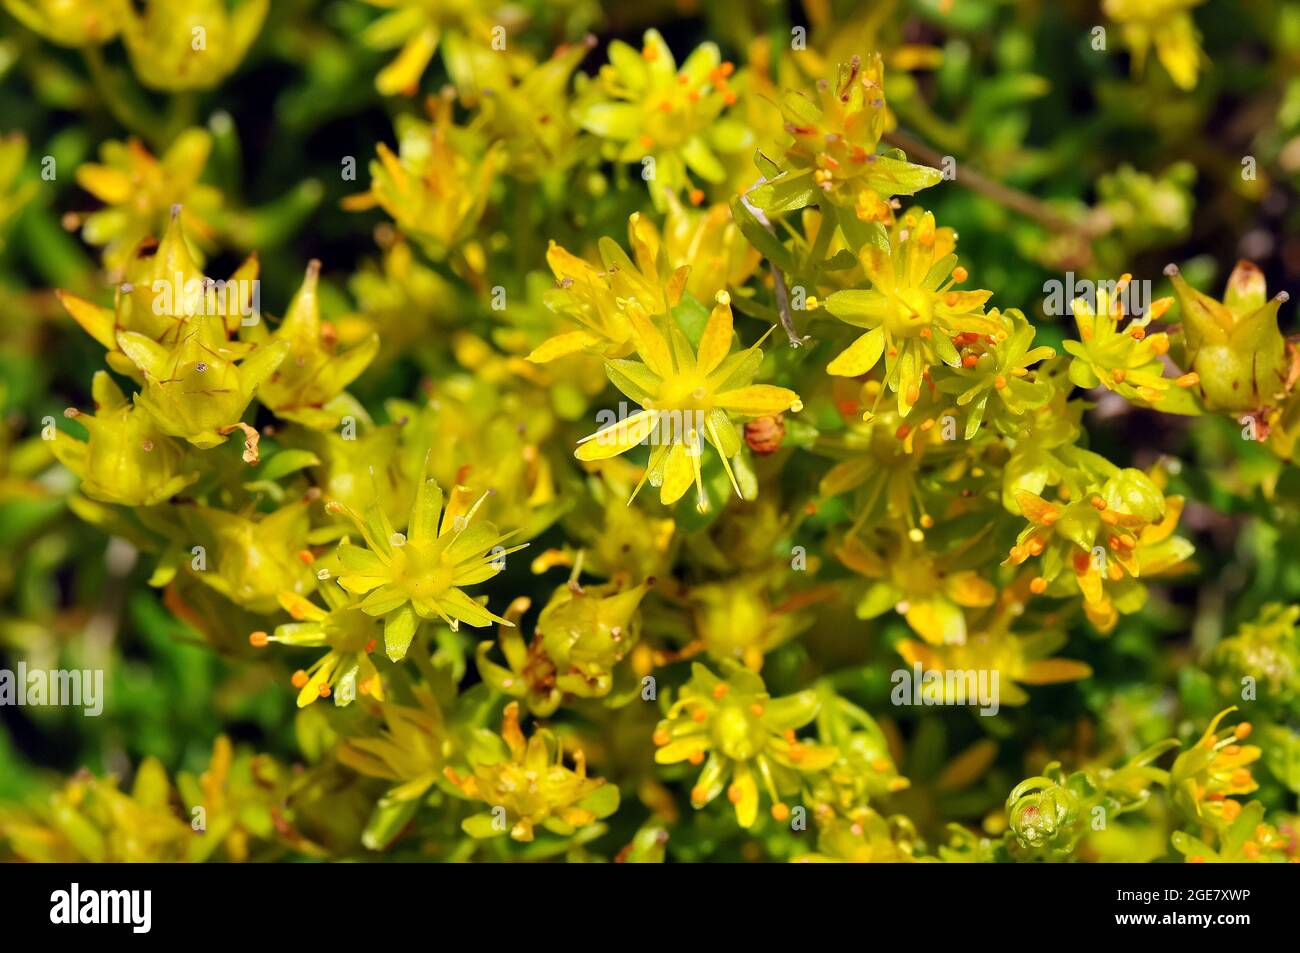 yellow mountain saxifrage or yellow saxifrage, Fetthennen-Steinbrech, Saxifraga aizoides, kőtörőfű, Alps, Europe Stock Photo